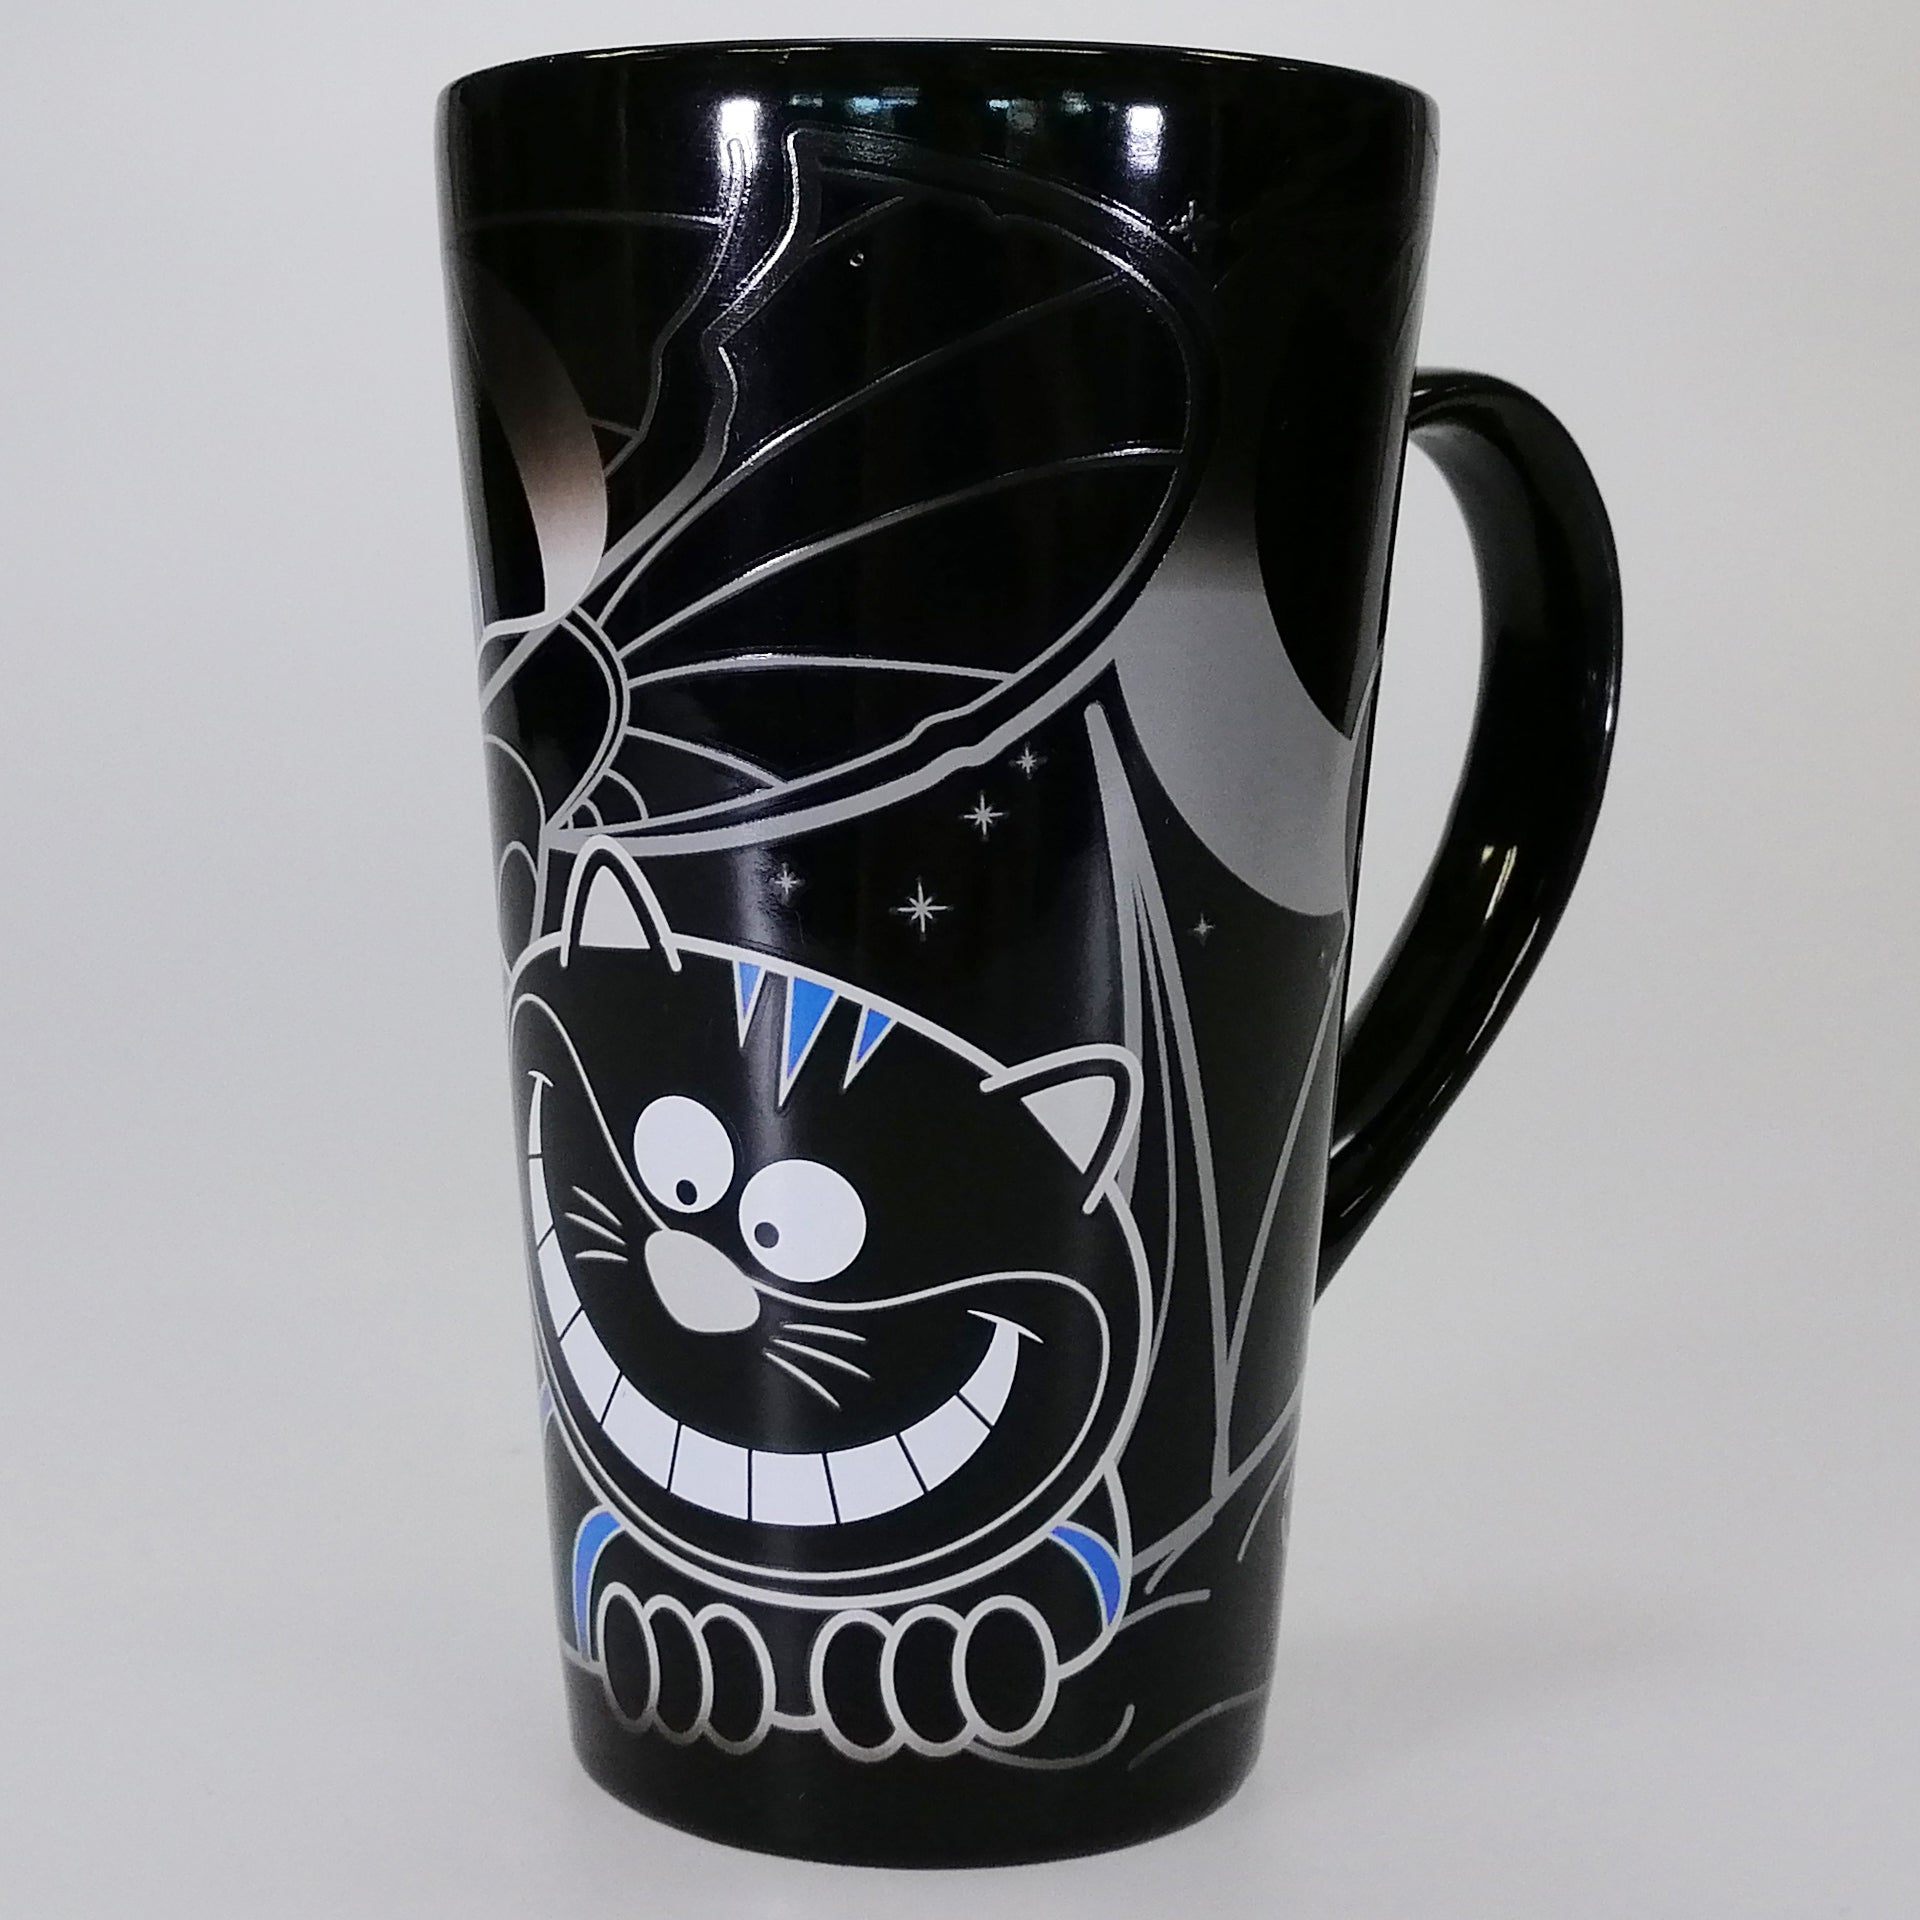 Cheshire Cat Heat Reveal Mug